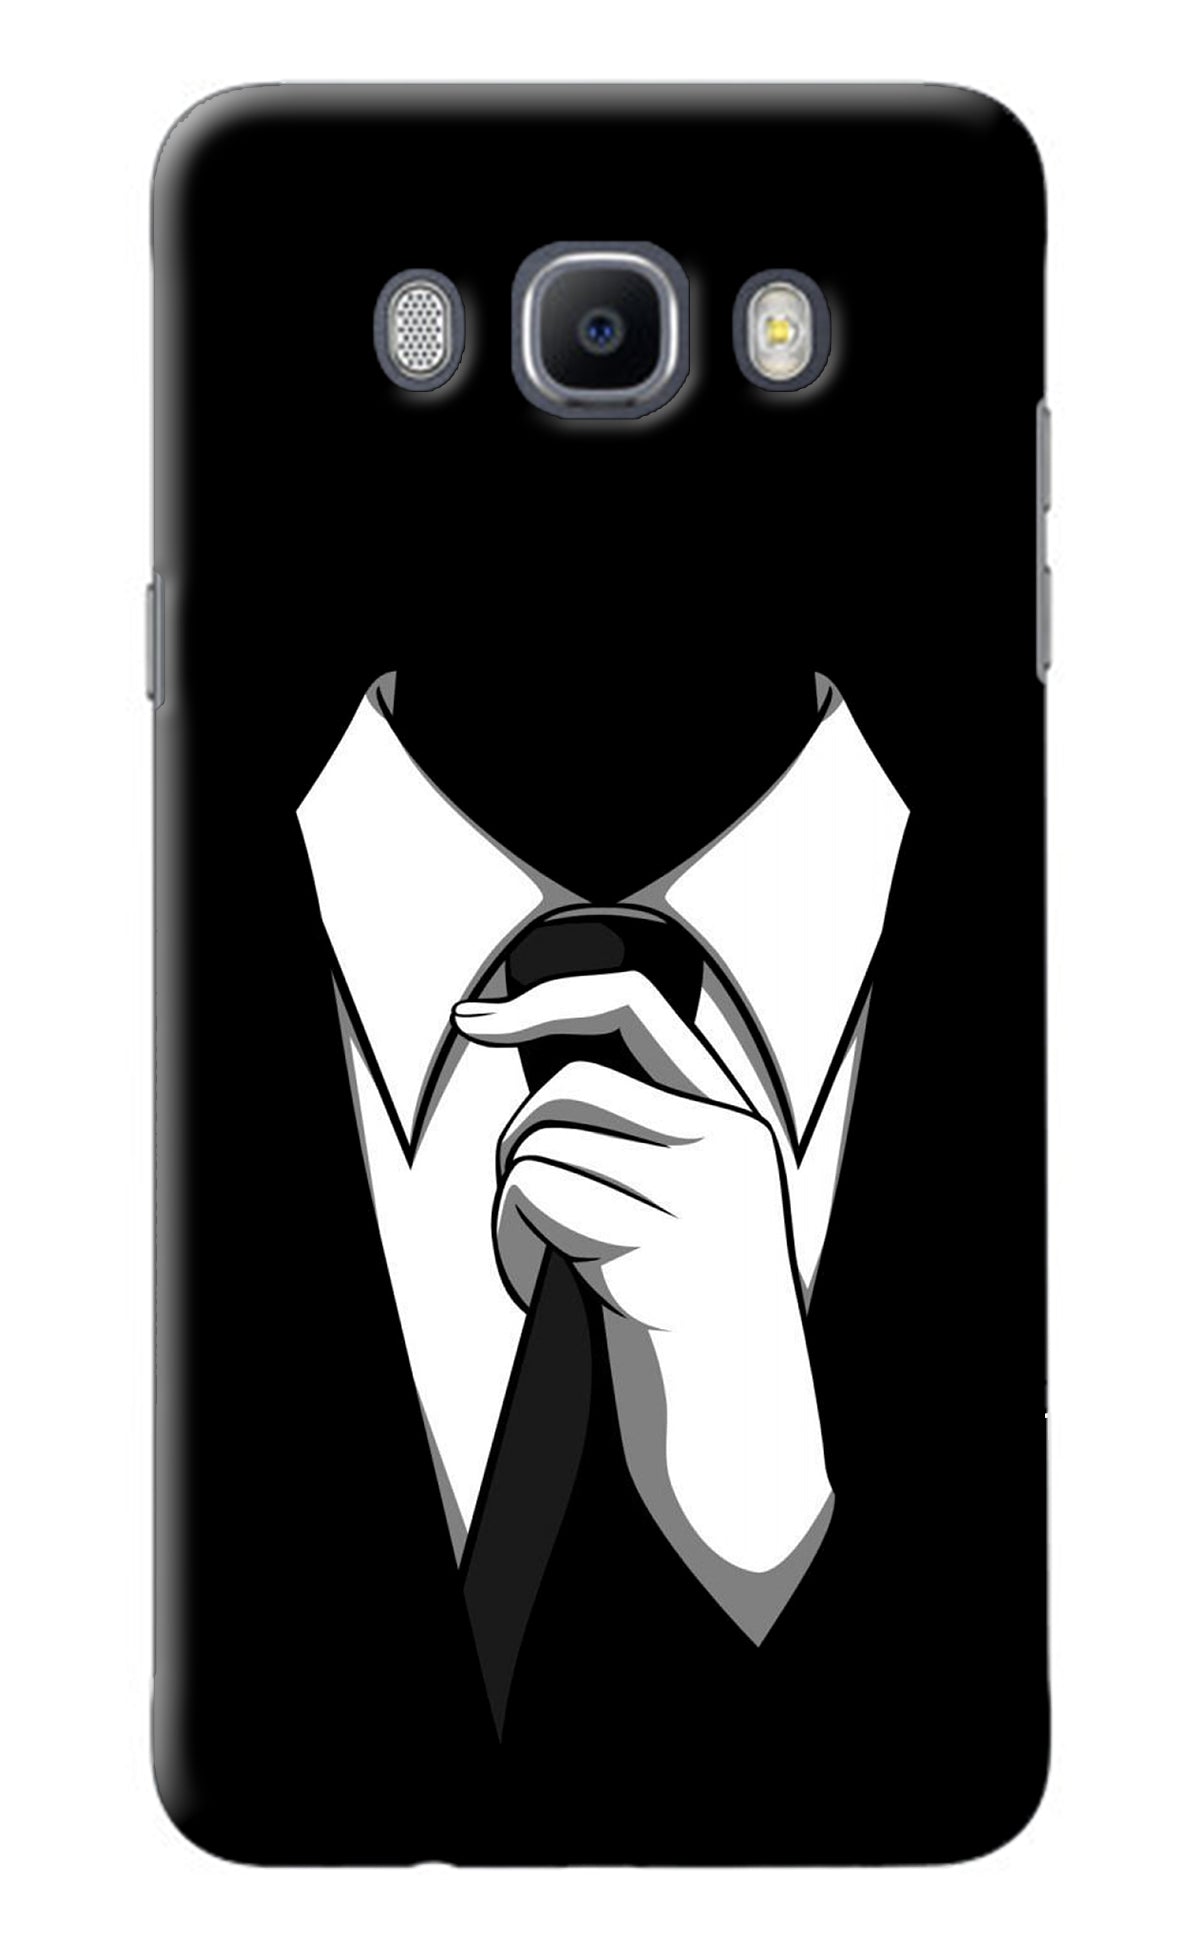 Black Tie Samsung J7 2016 Back Cover